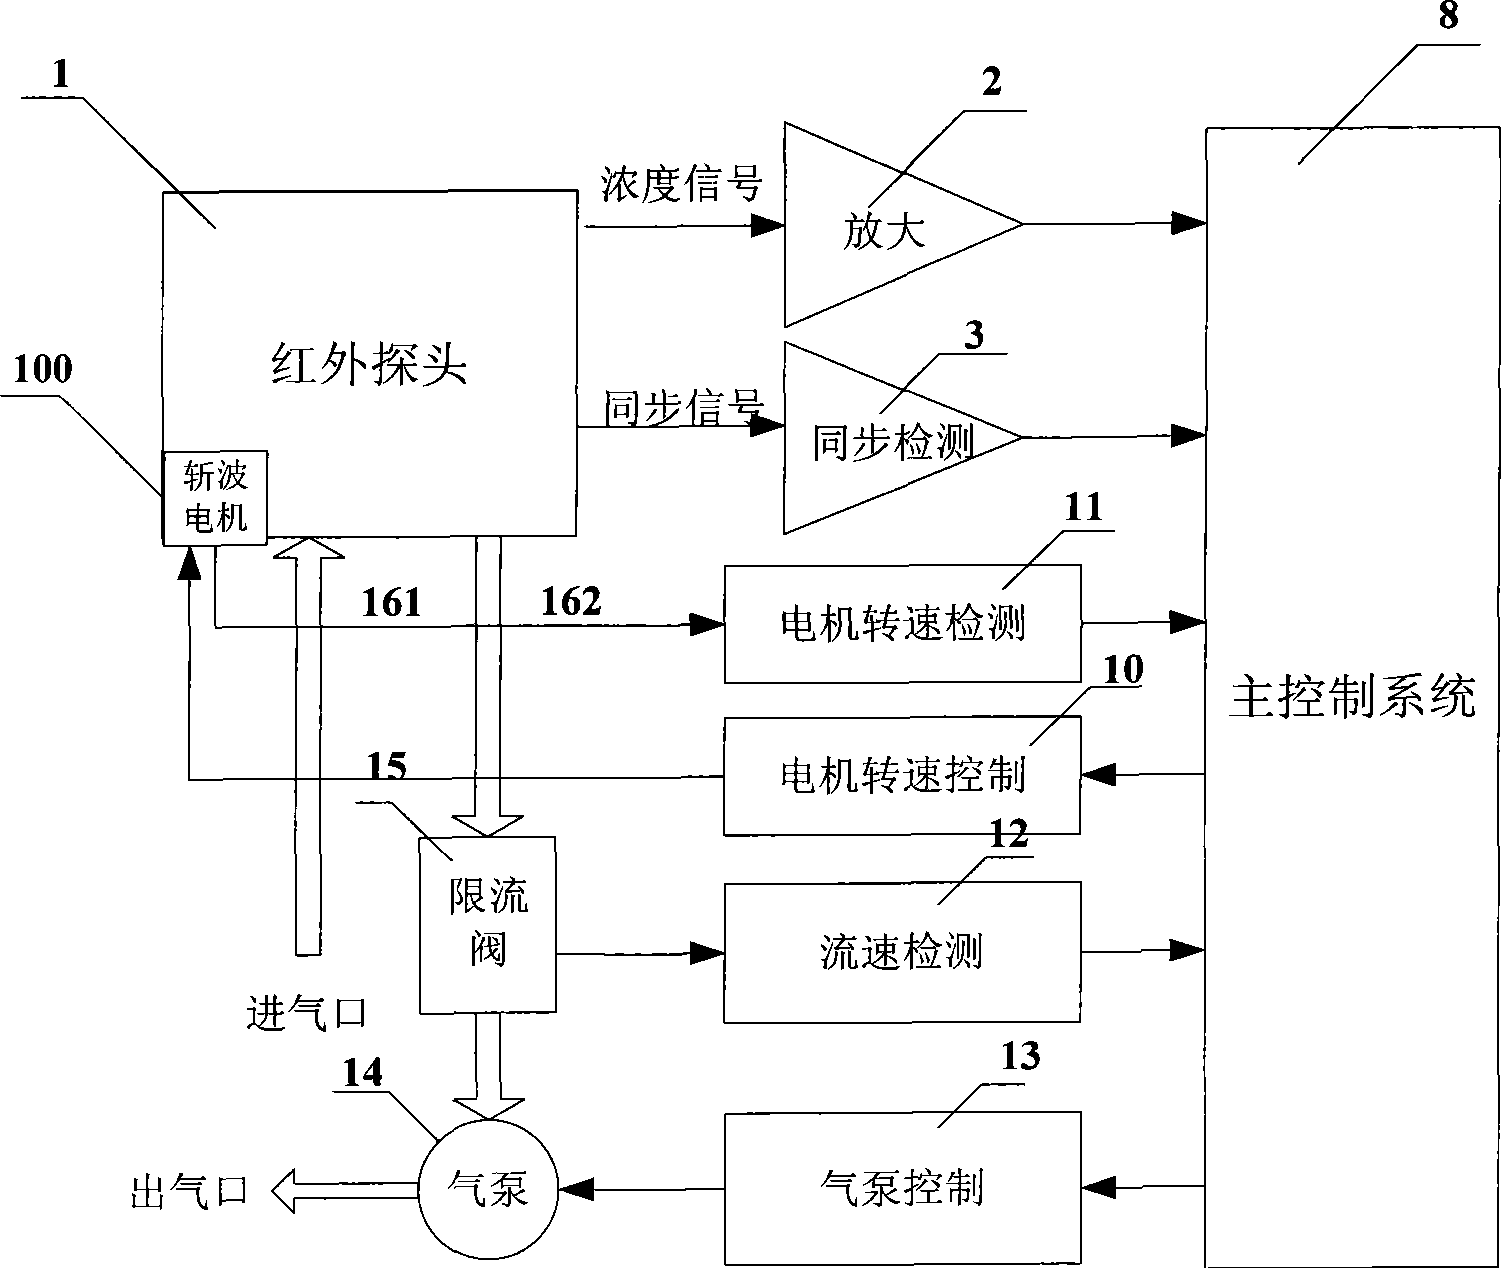 Gas concentration measuring apparatus